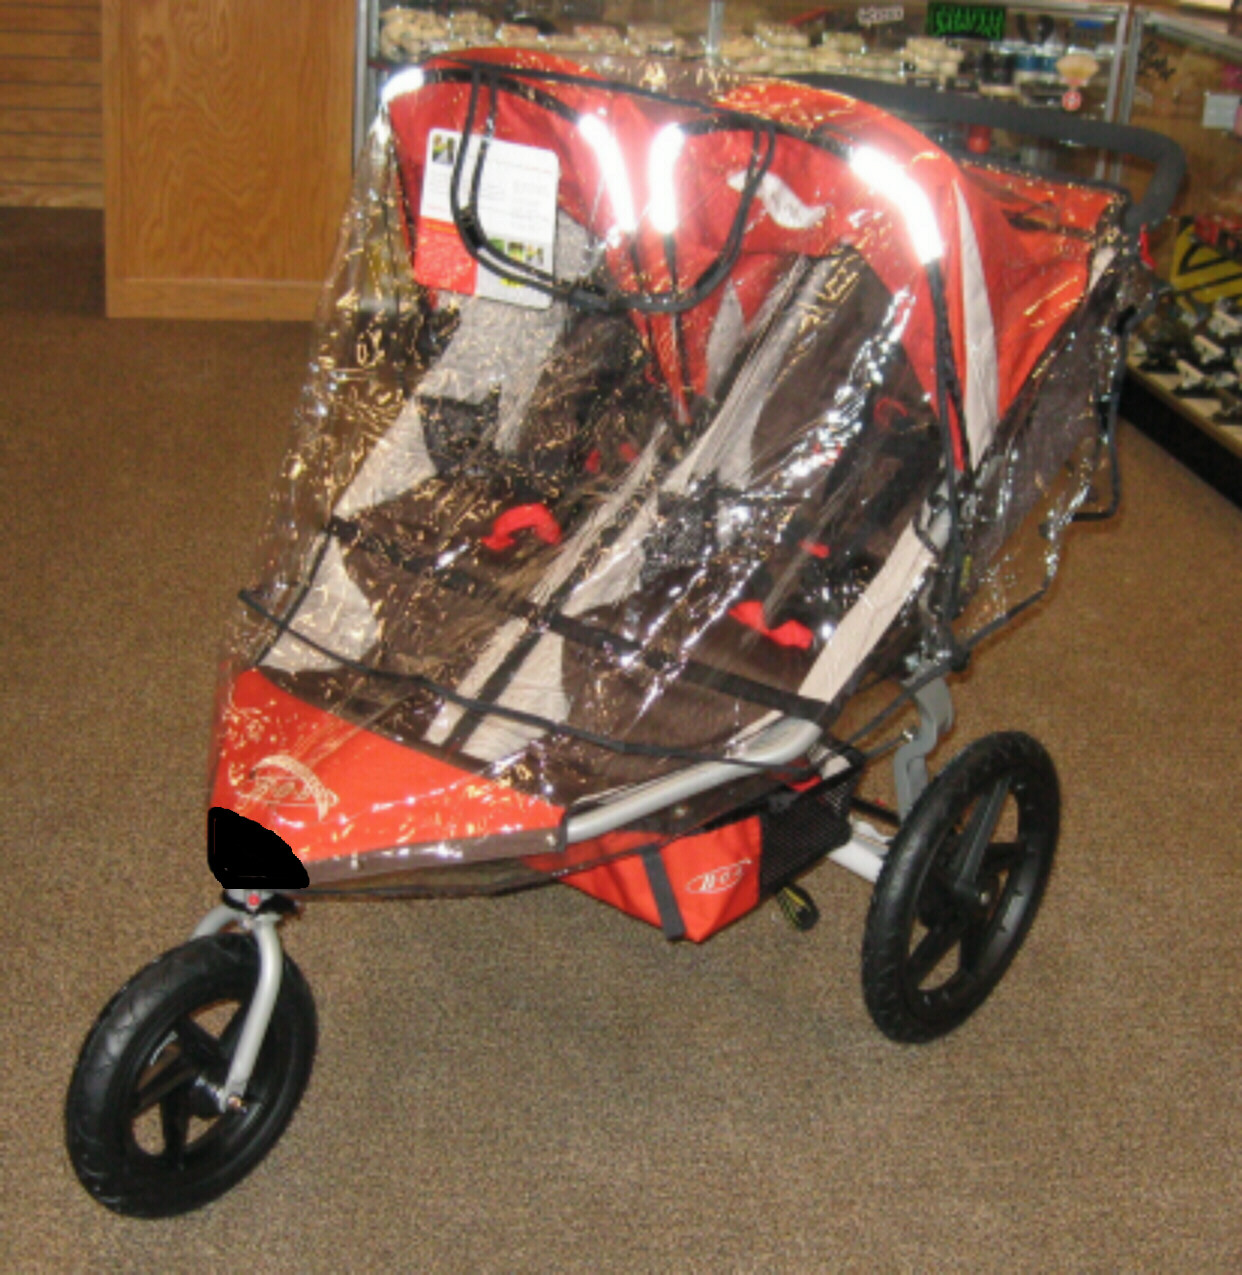 2012 bob double stroller